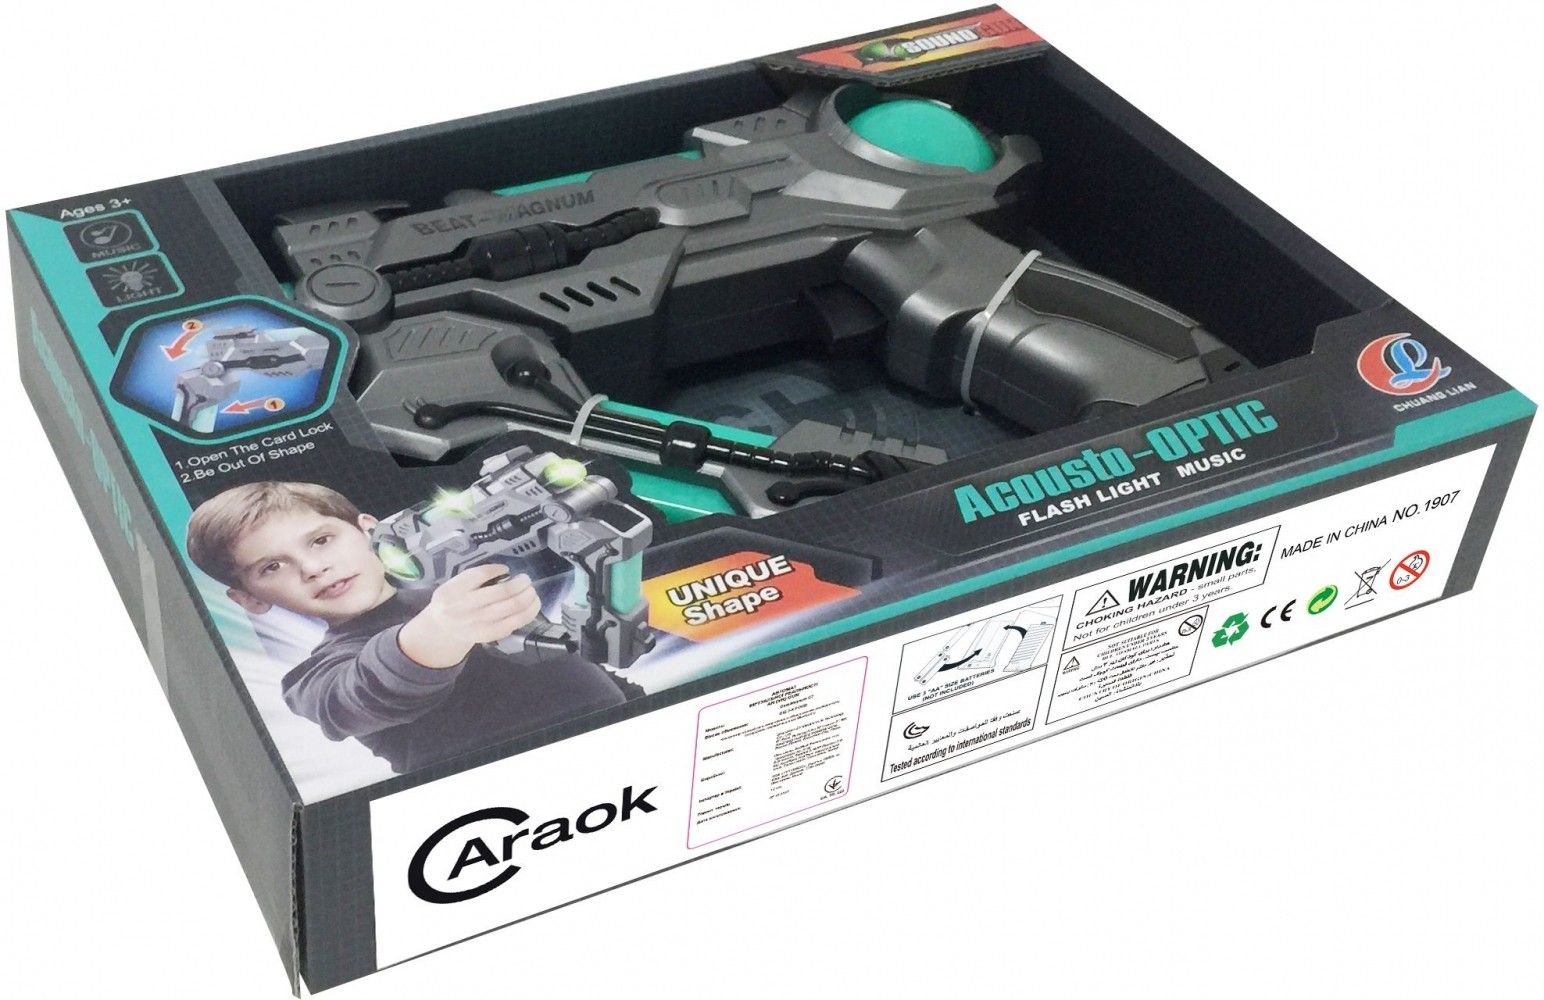 Акция на Автомат віртуальної реальності Caraok Gun G7 Toy от Територія твоєї техніки - 6